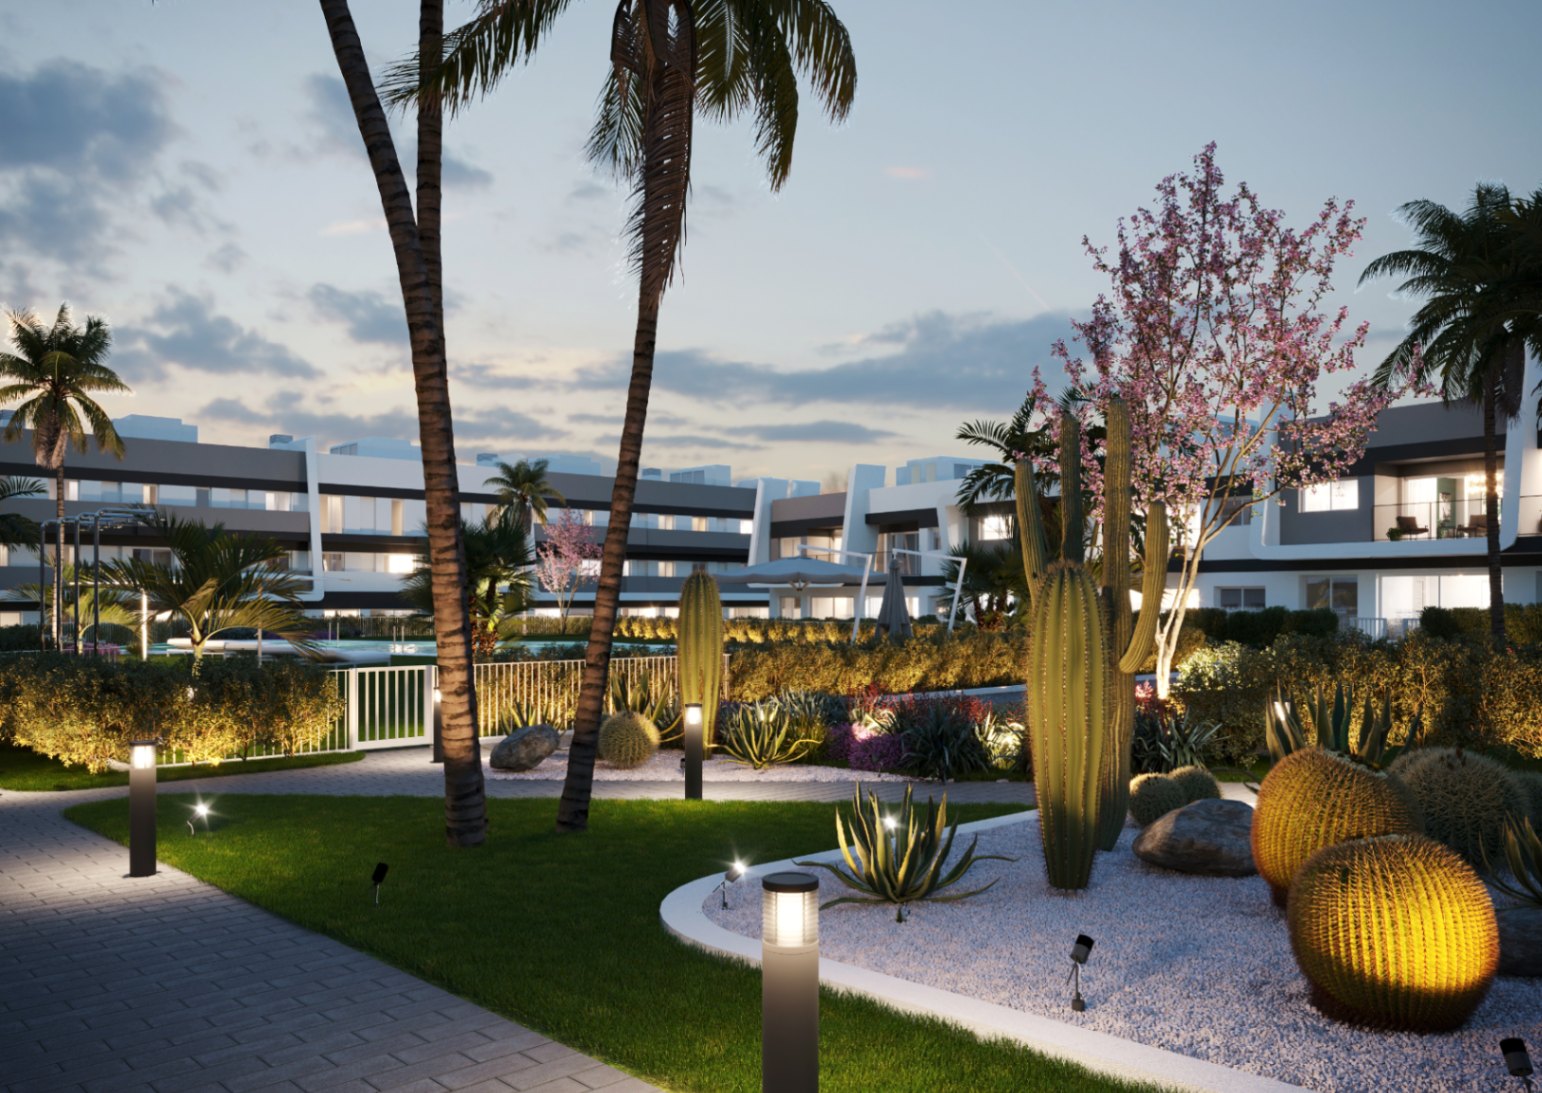 Apartamentos nuevos con piscina, 2 - 3 dormitorios, Santa Pola Alicante